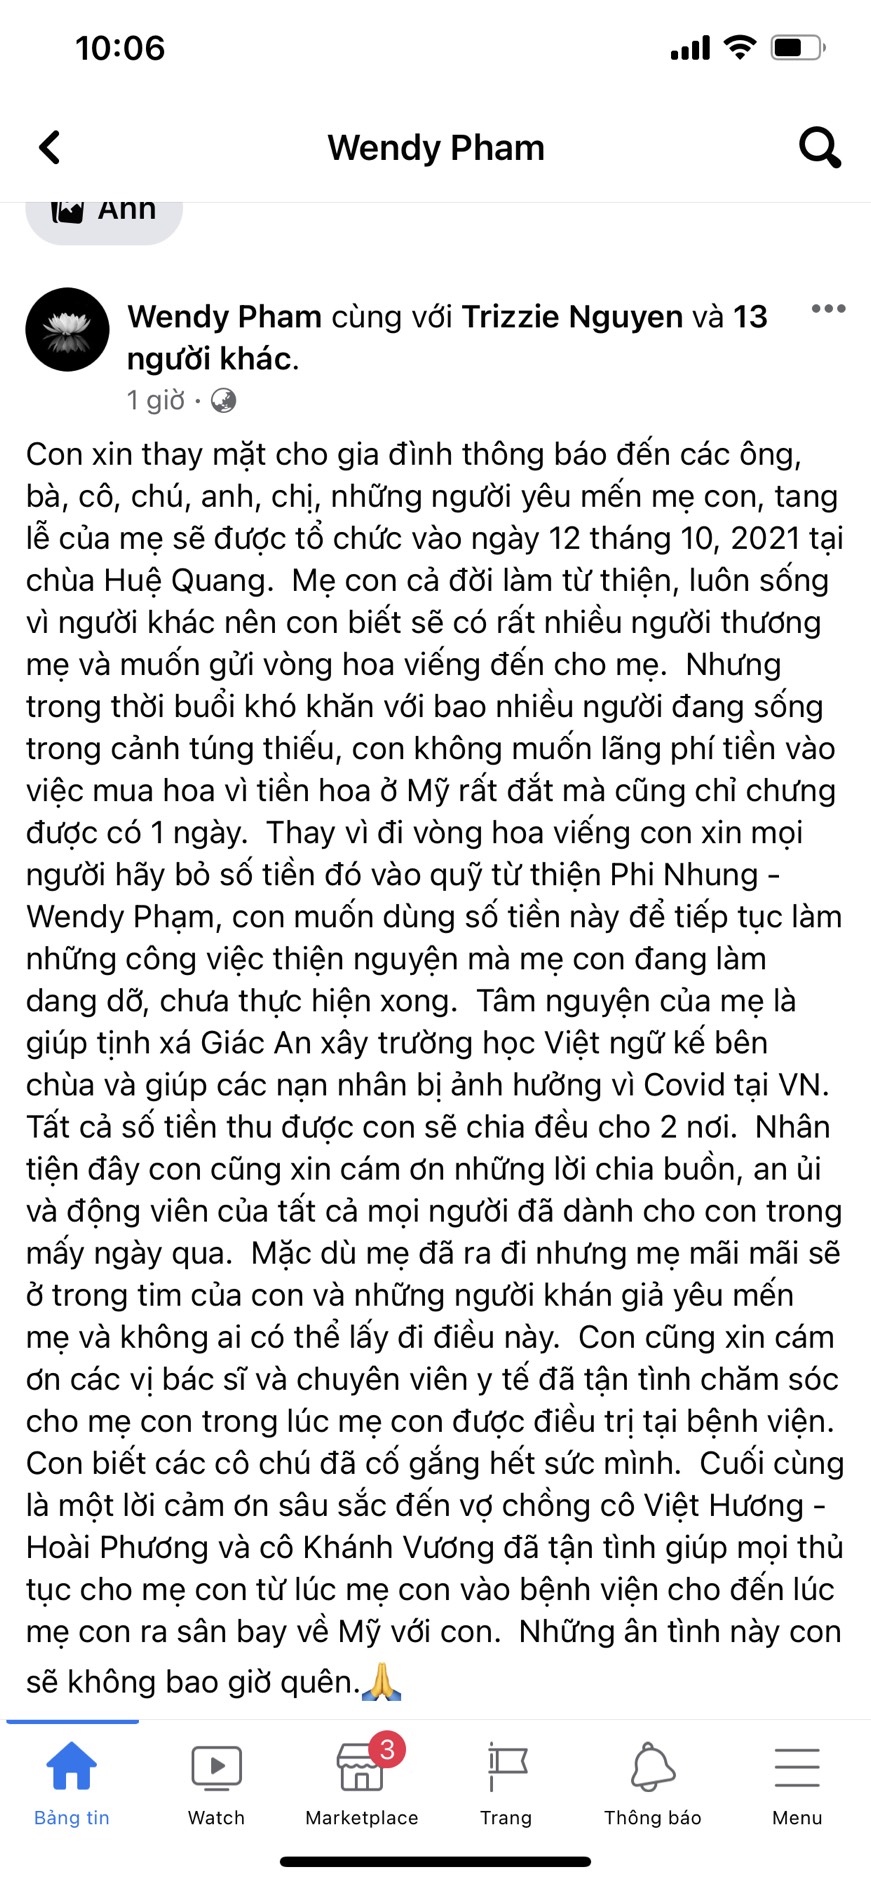 Bài đăng được Wendy Phạm đăng tải cách đây ít giờ trên trang cá nhân